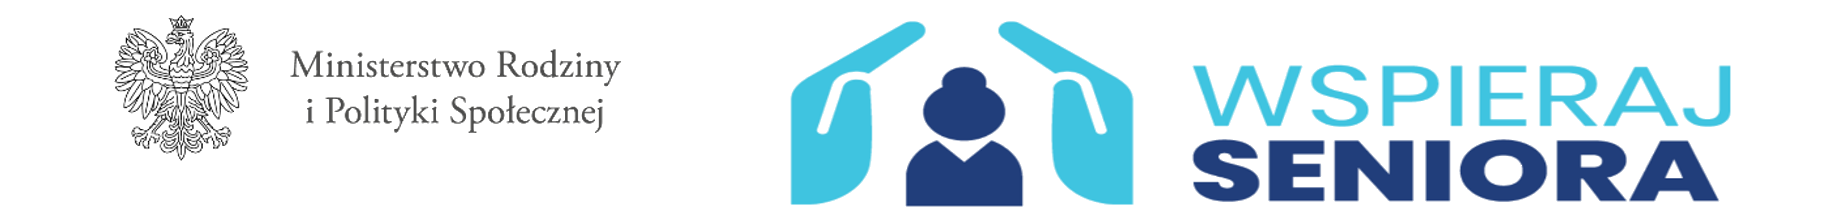 Logo Ministerstwa Rodziny i Polityki Społecznej oraz Wspieraj Seniora